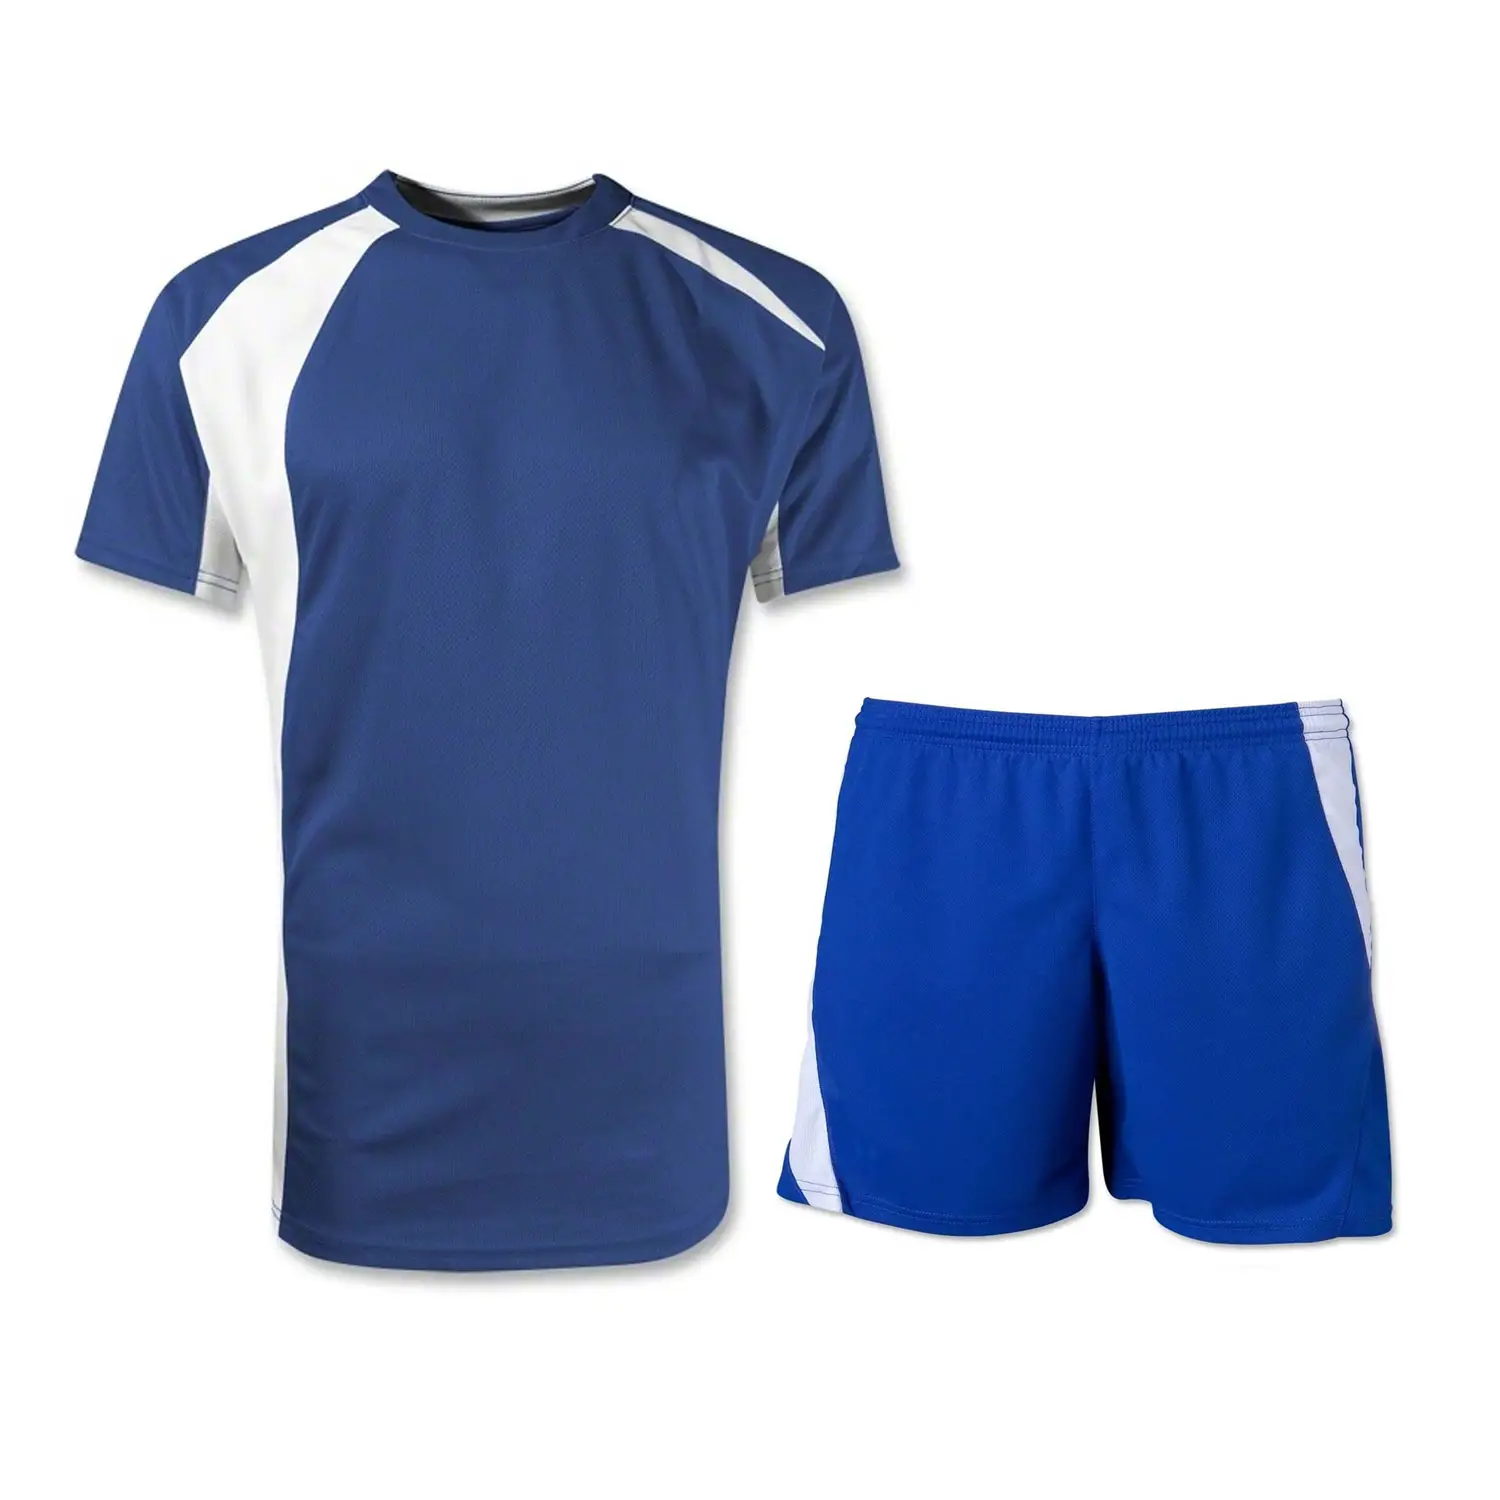 Kustom kaus & celana pendek tim nasional, pakaian seragam sepak bola ukuran dewasa untuk pakaian olahraga sepak bola